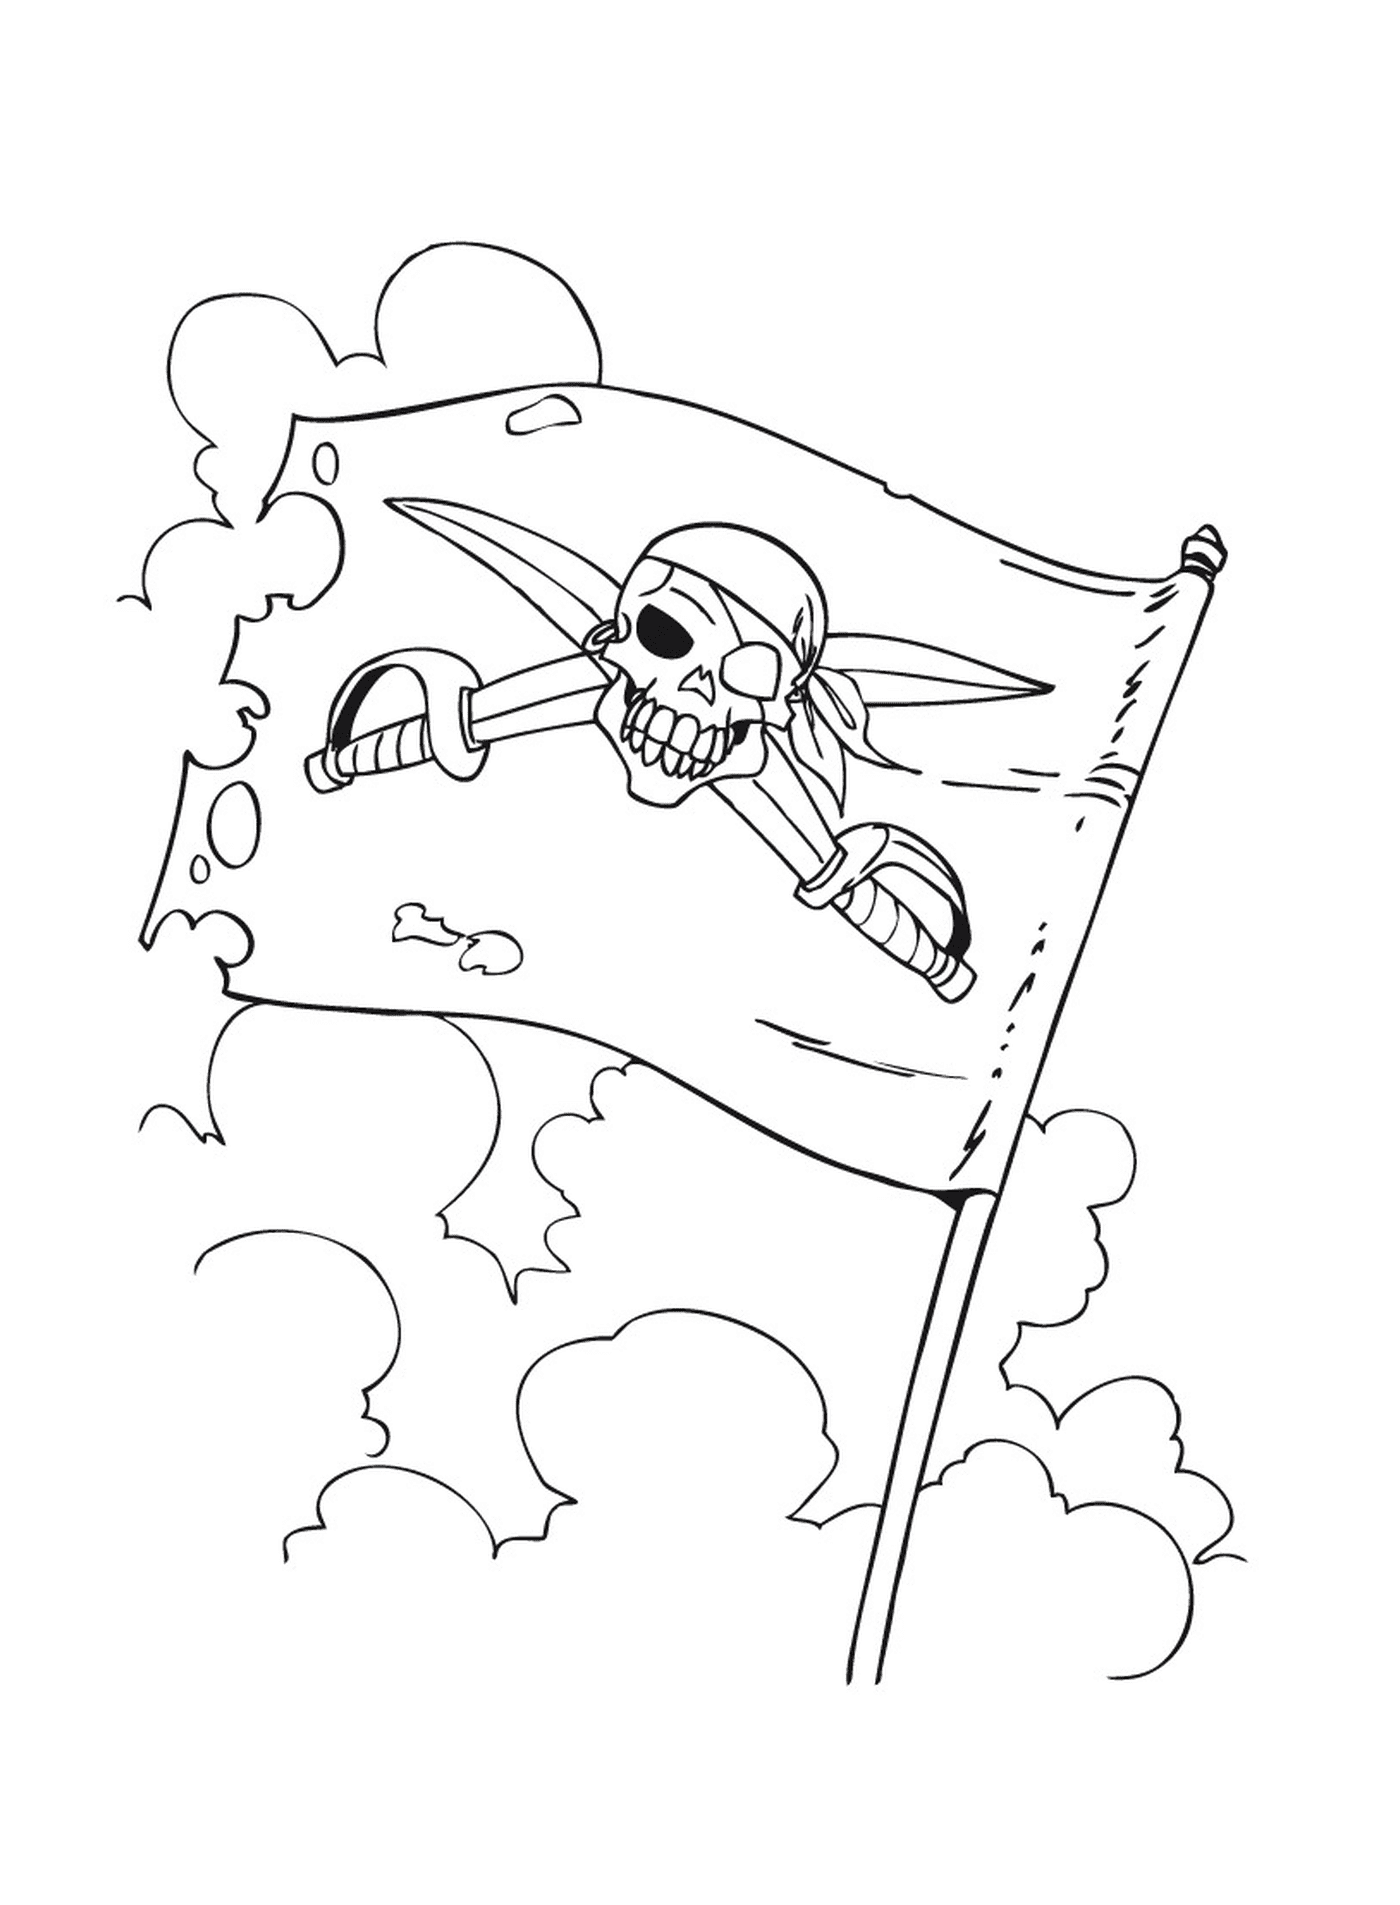  Угрожающий пиратский флаг 